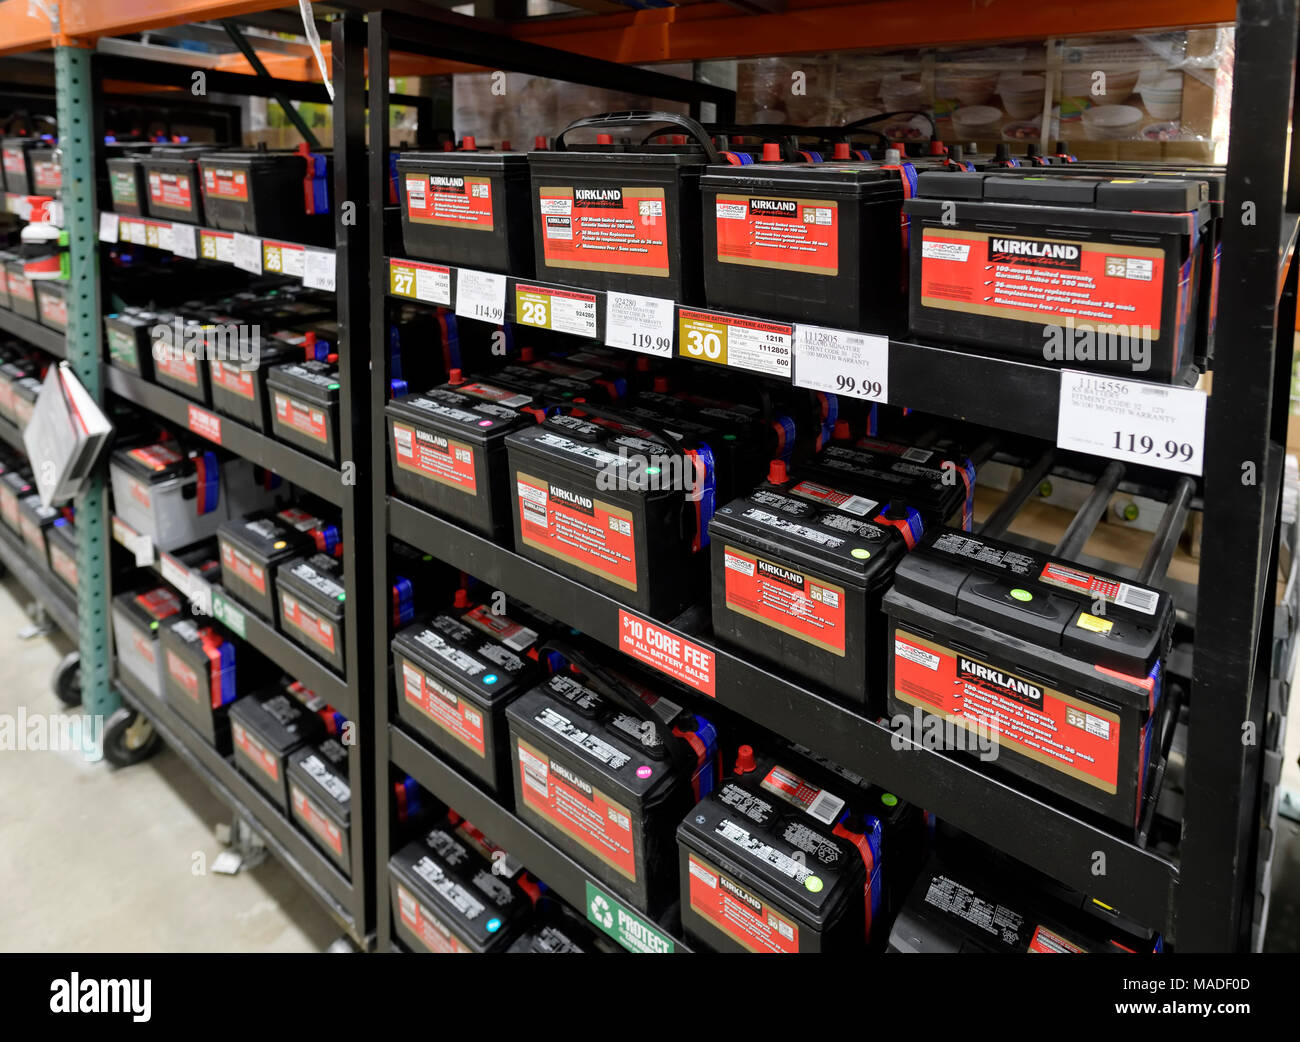 Las baterías de los coches de la marca Kirkland sobre estanterías de membresía Costco Wholesale Warehouse store. Columbia Británica, Canadá 2017. Foto de stock